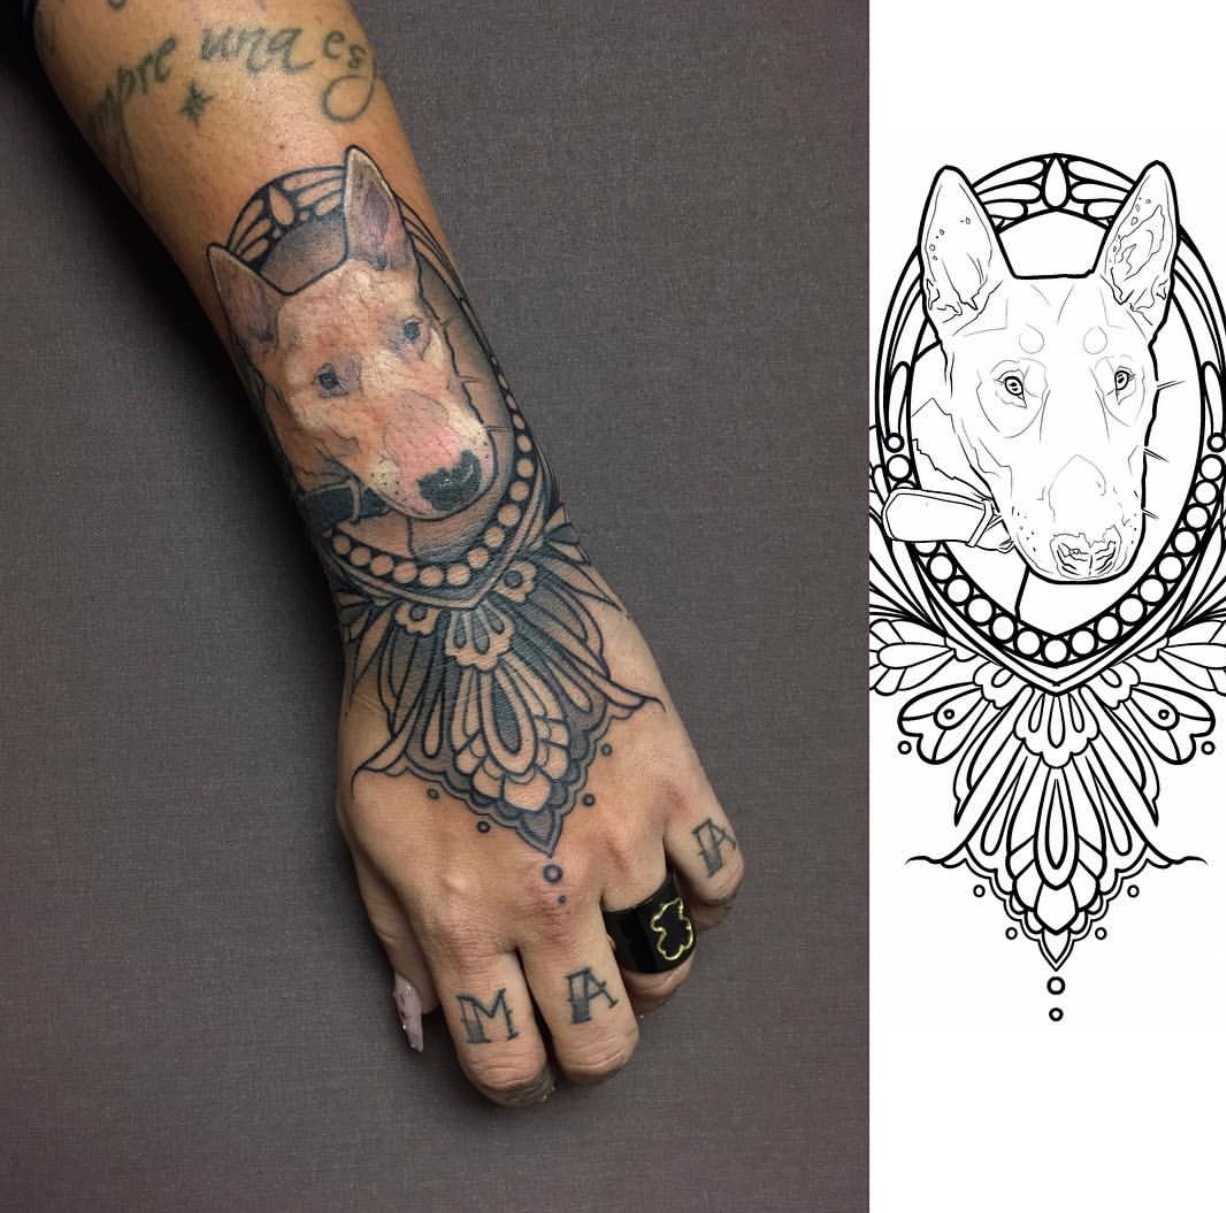 face of Bull Terrier inside a mandala design frame tattoo on hands